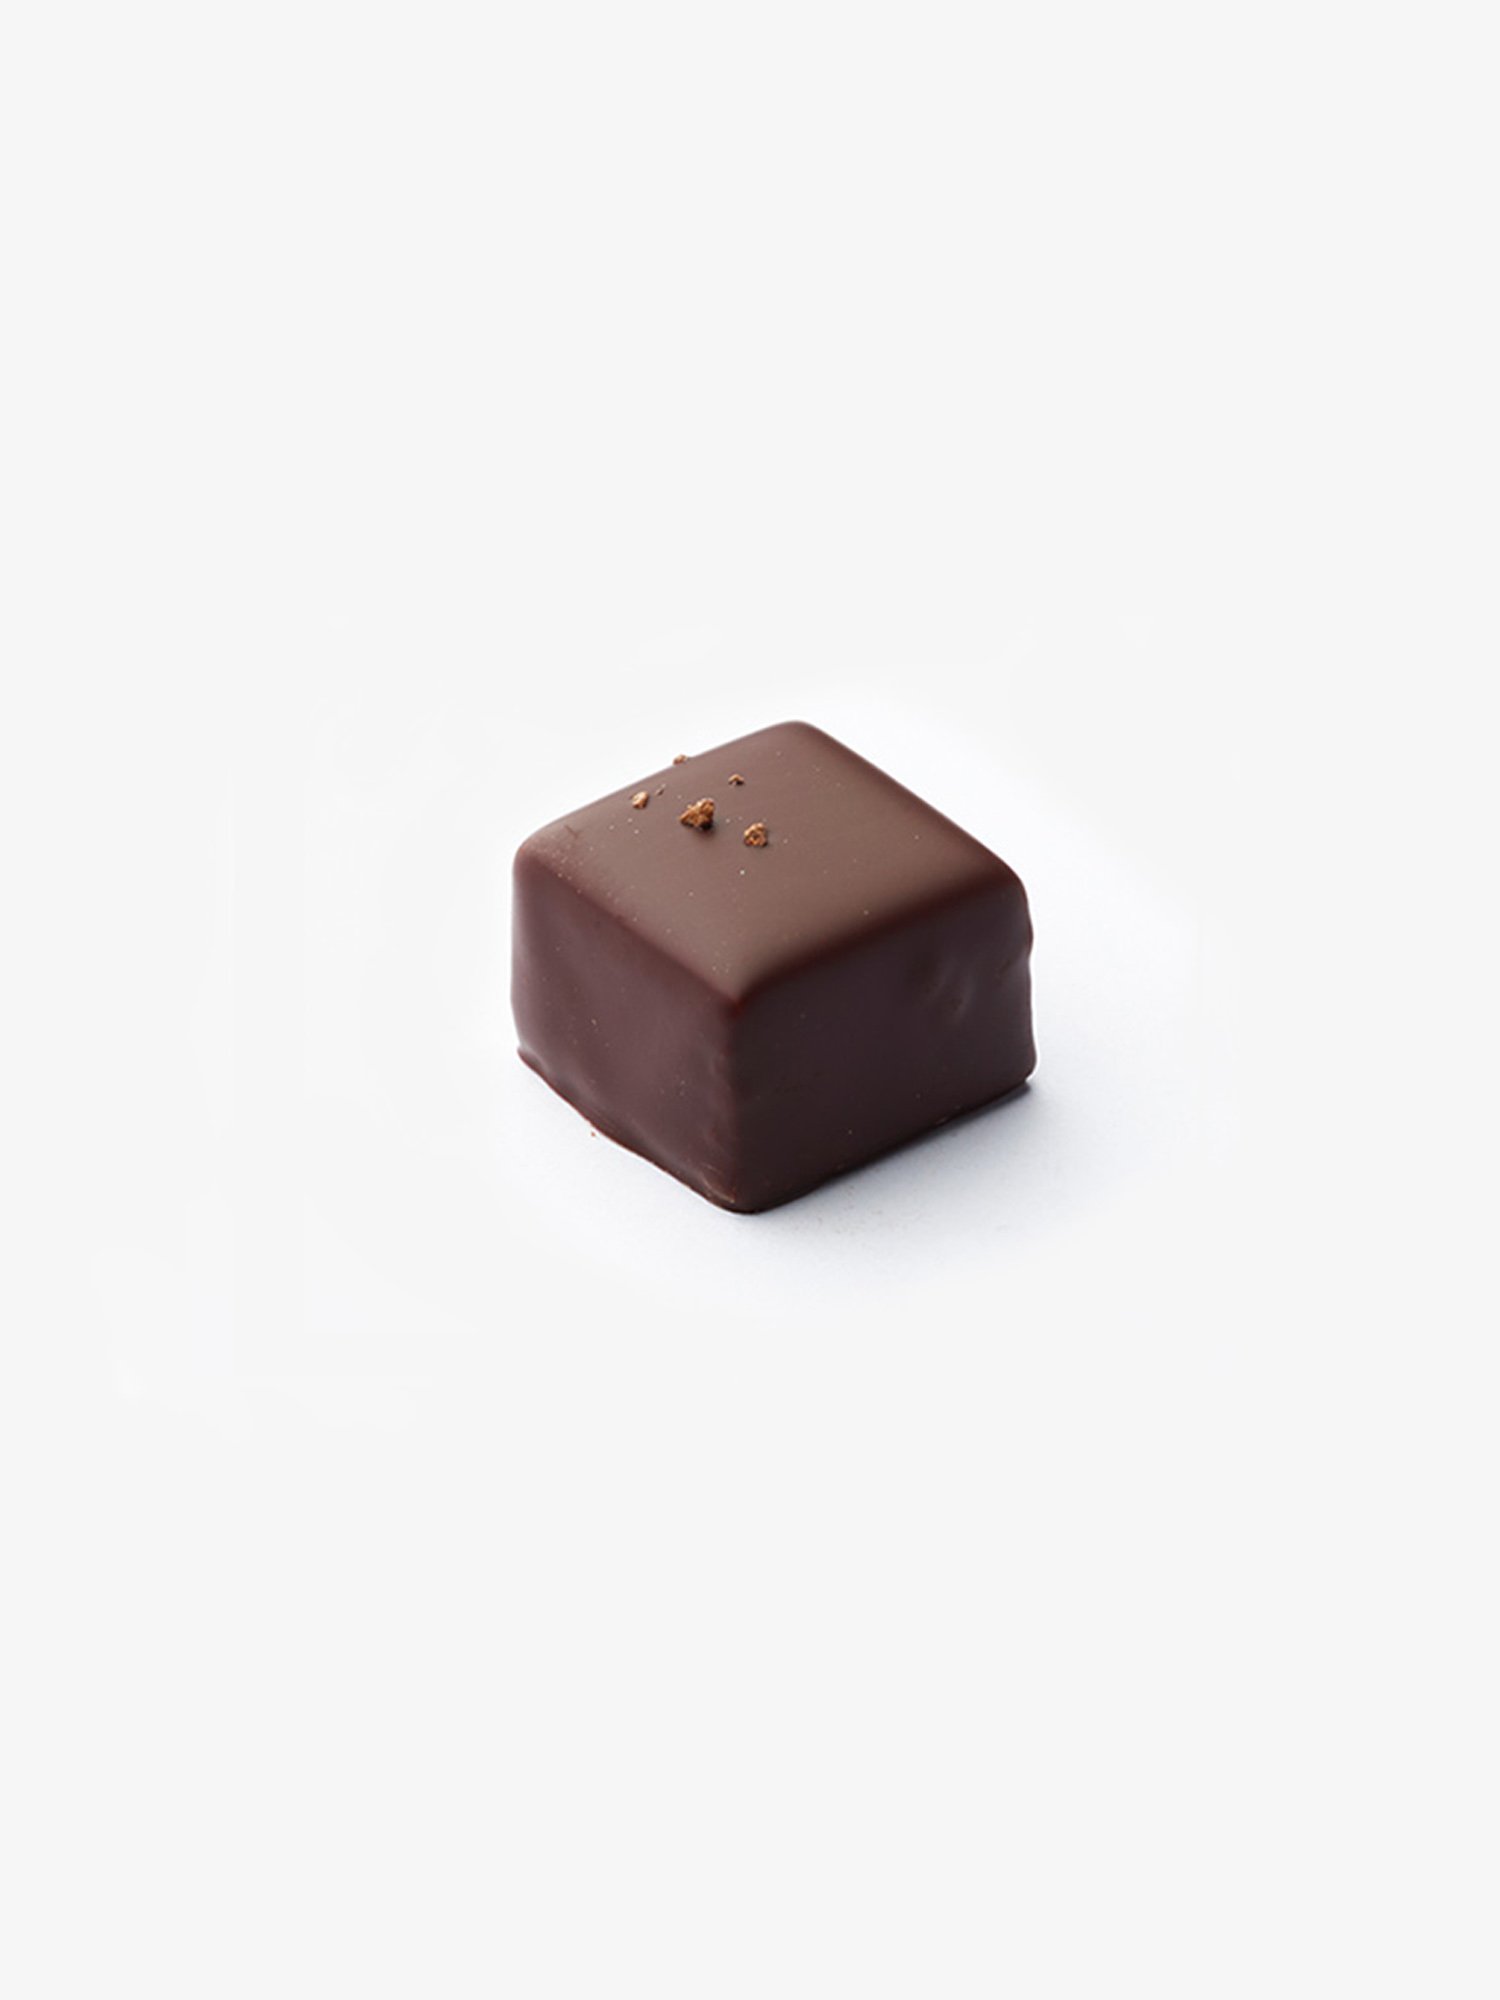 Grand Cru Pralinés von Chocolatier Thomas Müller online bestellen.